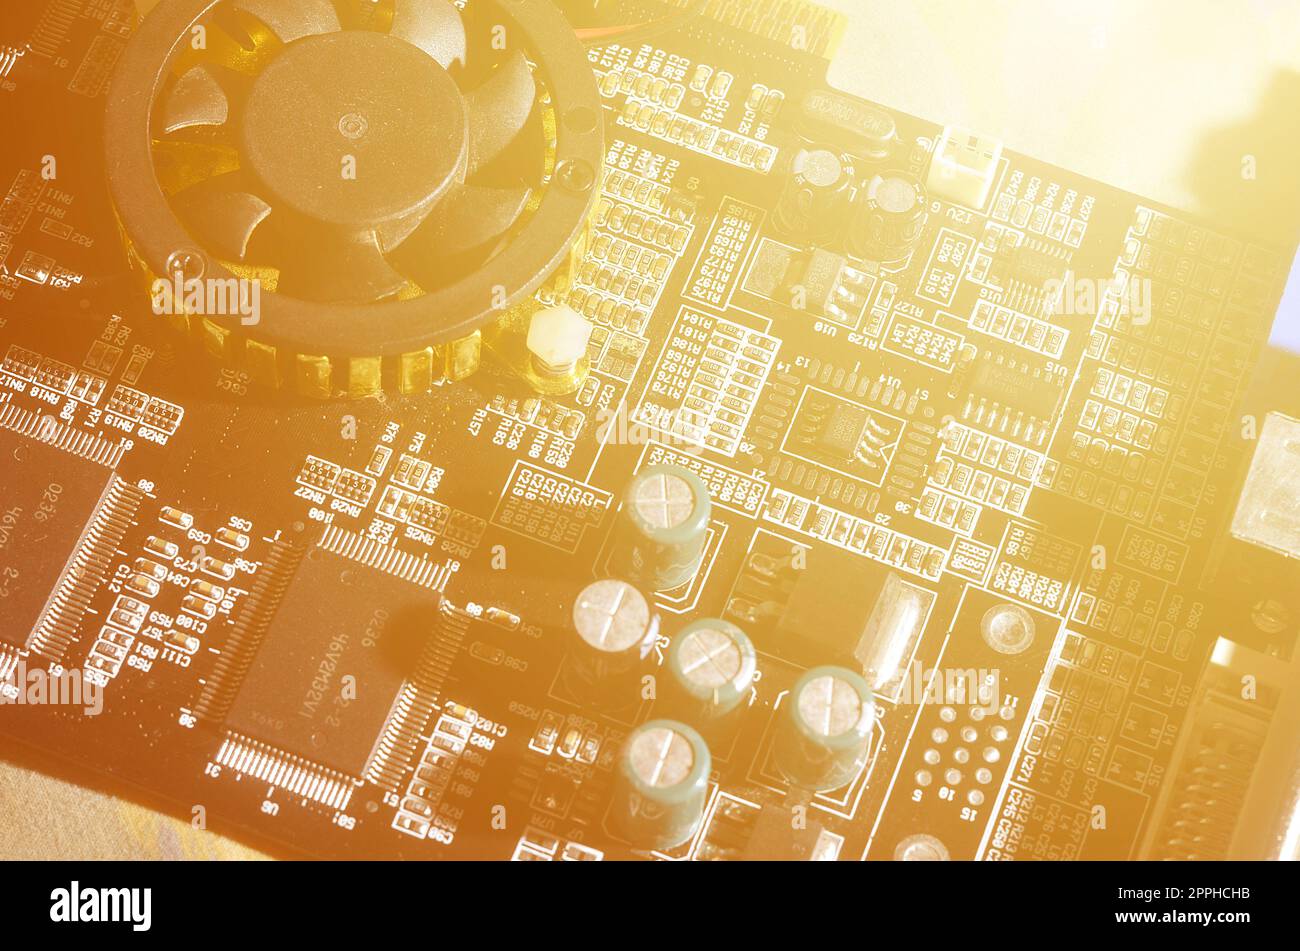 Eine getönte Makro Bild eines Computer Board mit vielen kleinen technologischen Elemente. Extrem geringe Tiefenschärfe. Abstrakte technologischer Hintergrund Stockfoto